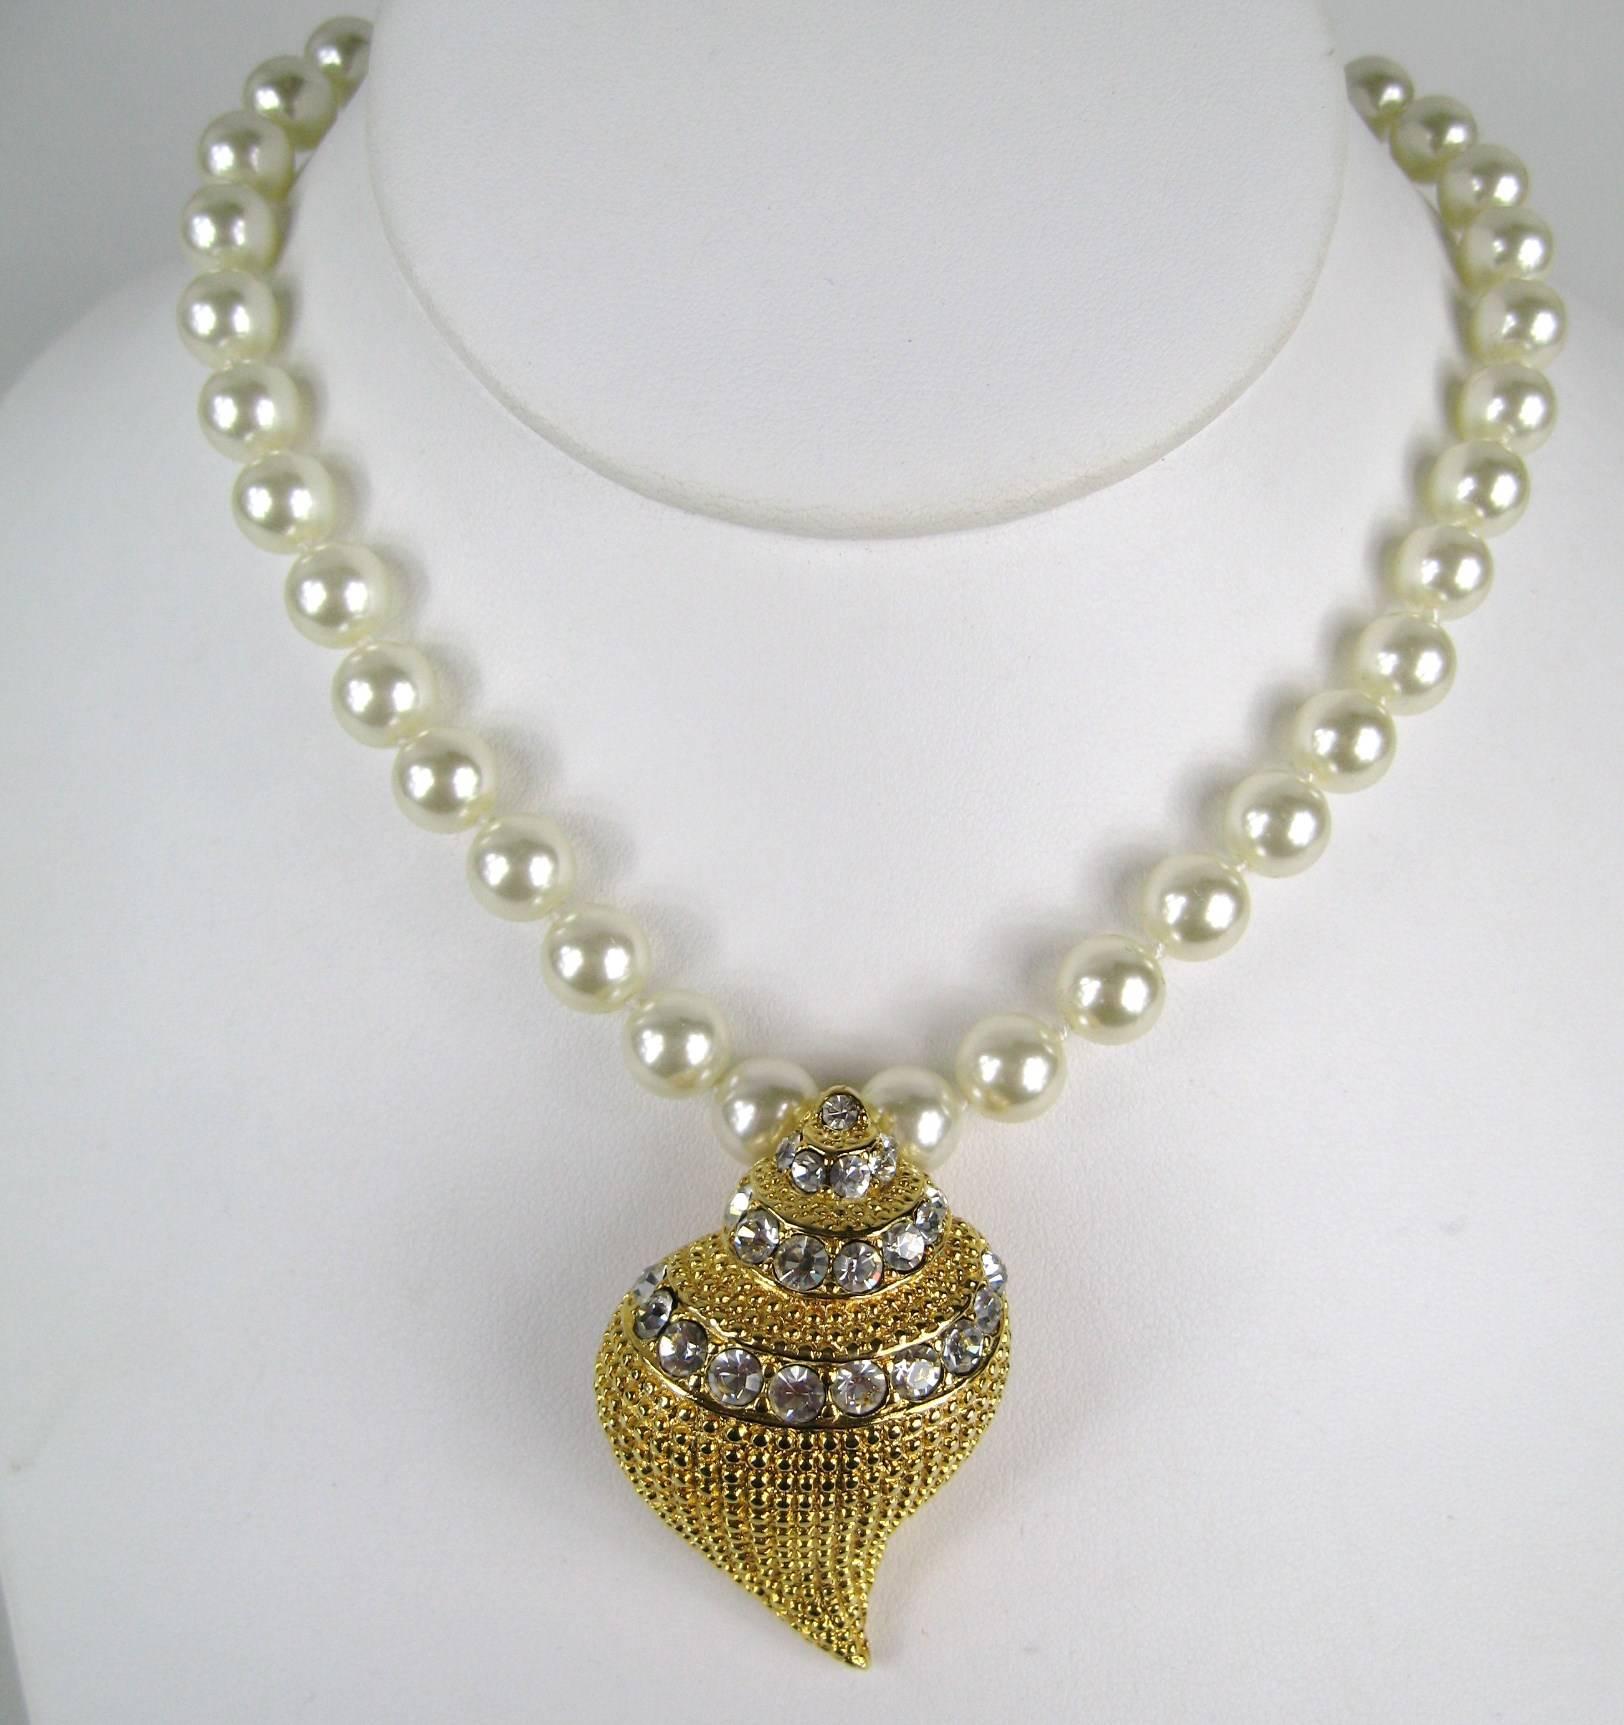 KJL Kenneth Jay Lane's Crystal Seashell Brooch Necklace and Earrings ist ein vielseitiges Schmuckstück, das sowohl als Brosche als auch als Halskette verwendet werden kann. Es handelt sich um eine vergoldete, strukturierte Muschel, die mit 3 Reihen